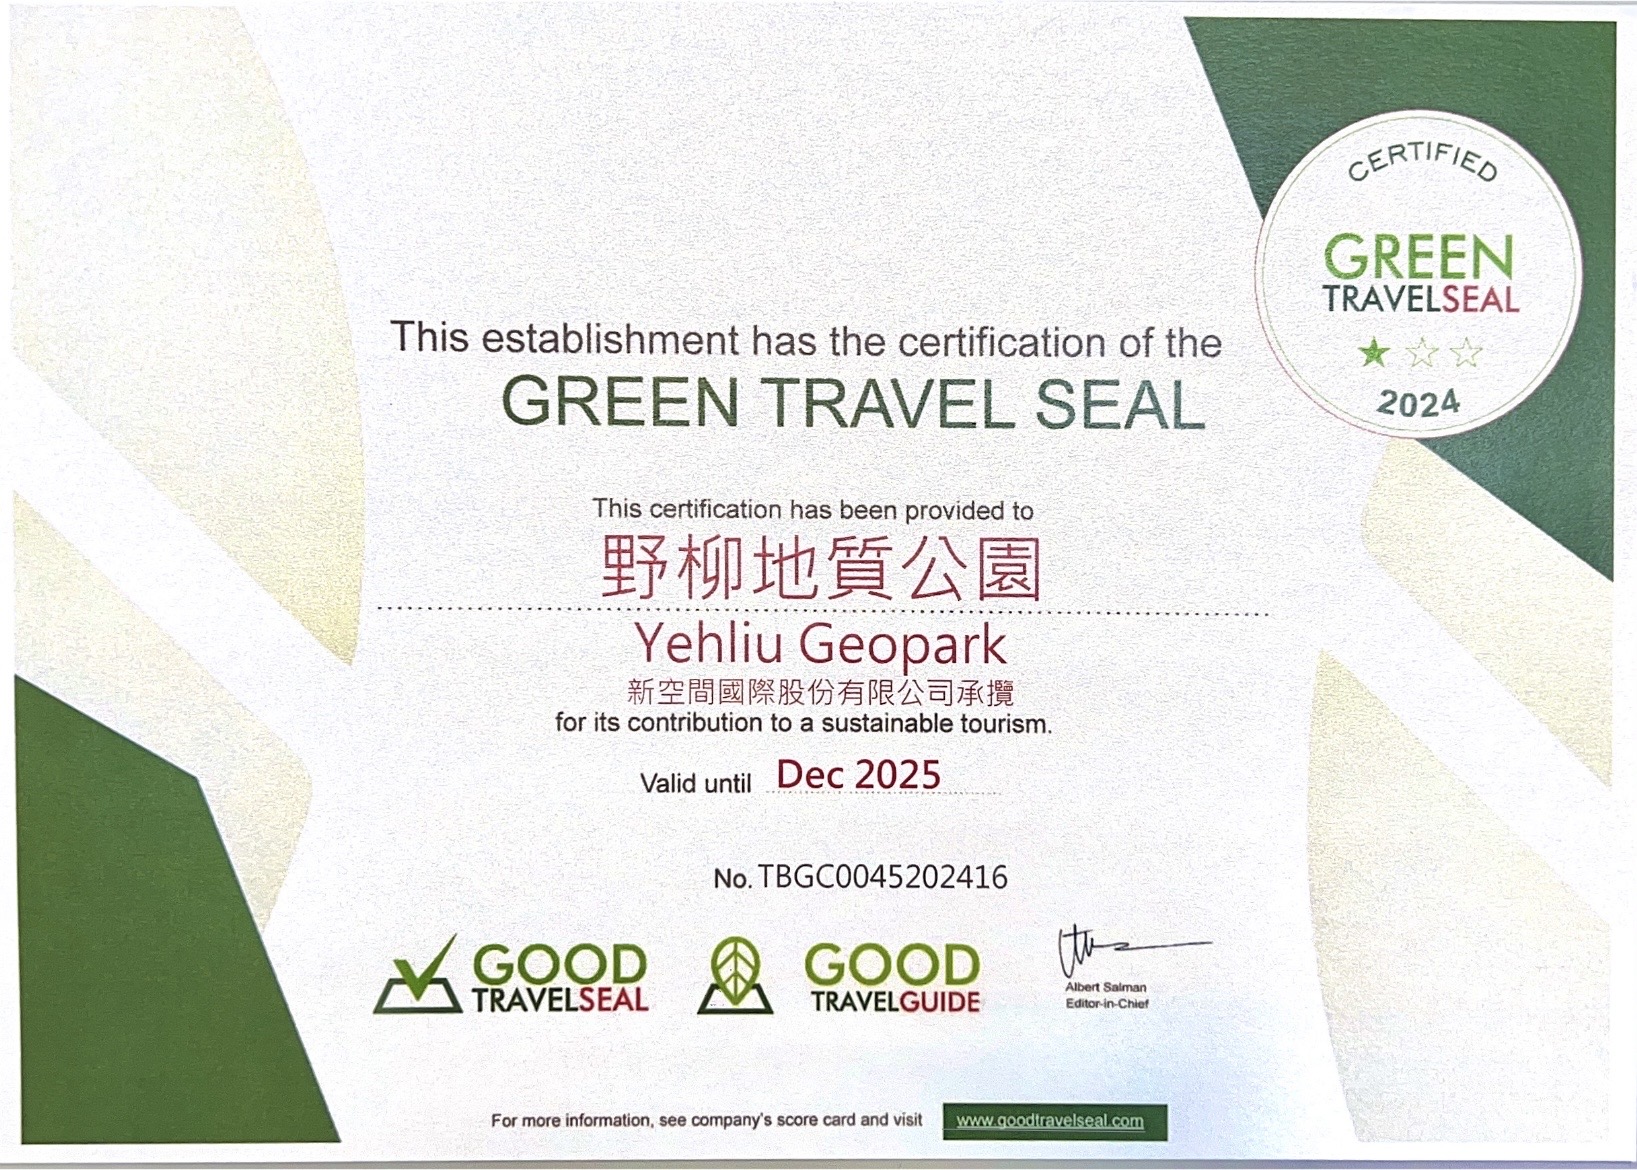 Yehliu Geopark receives award